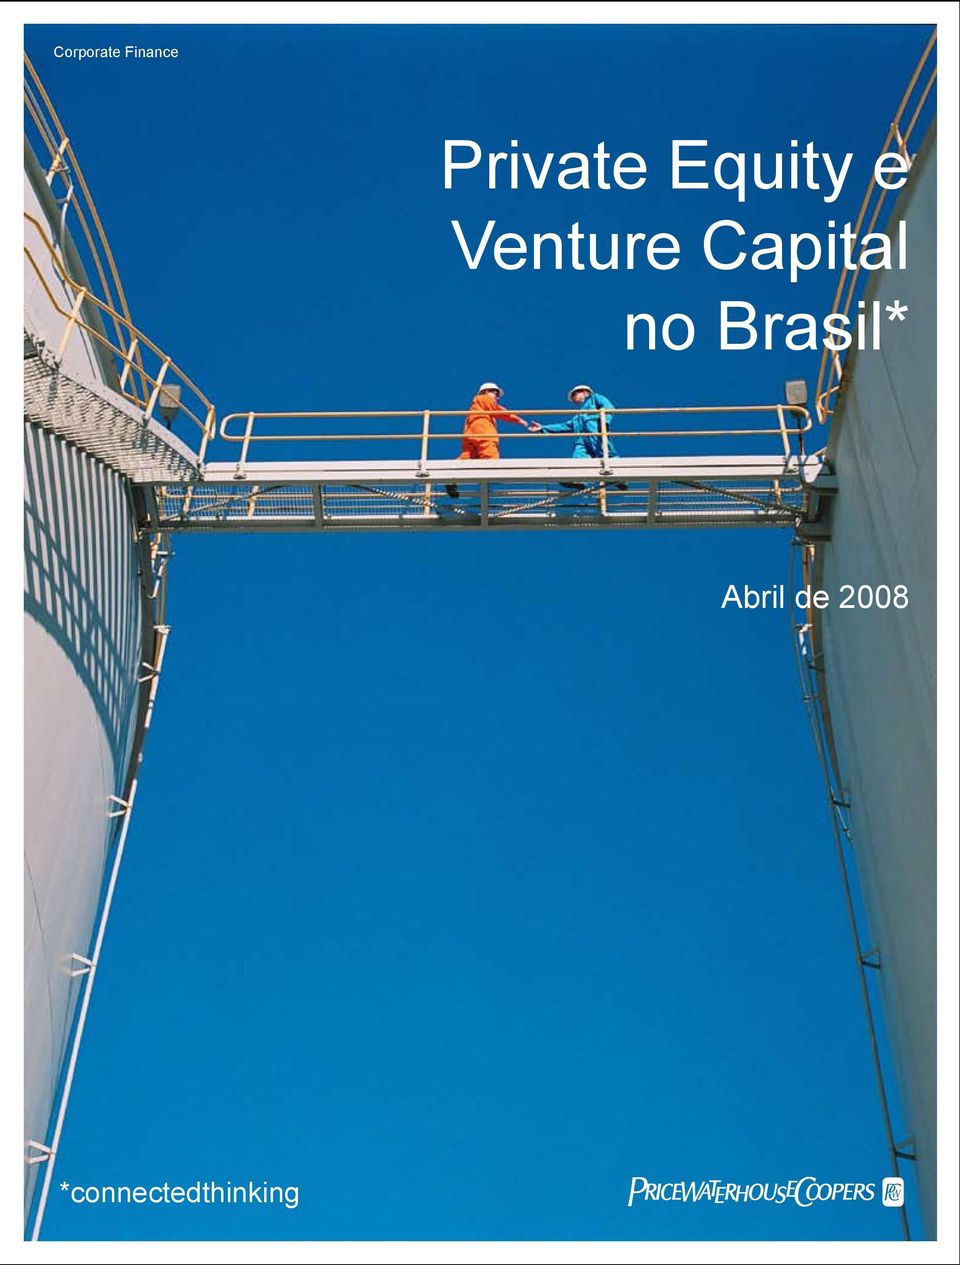 Venture Capital no